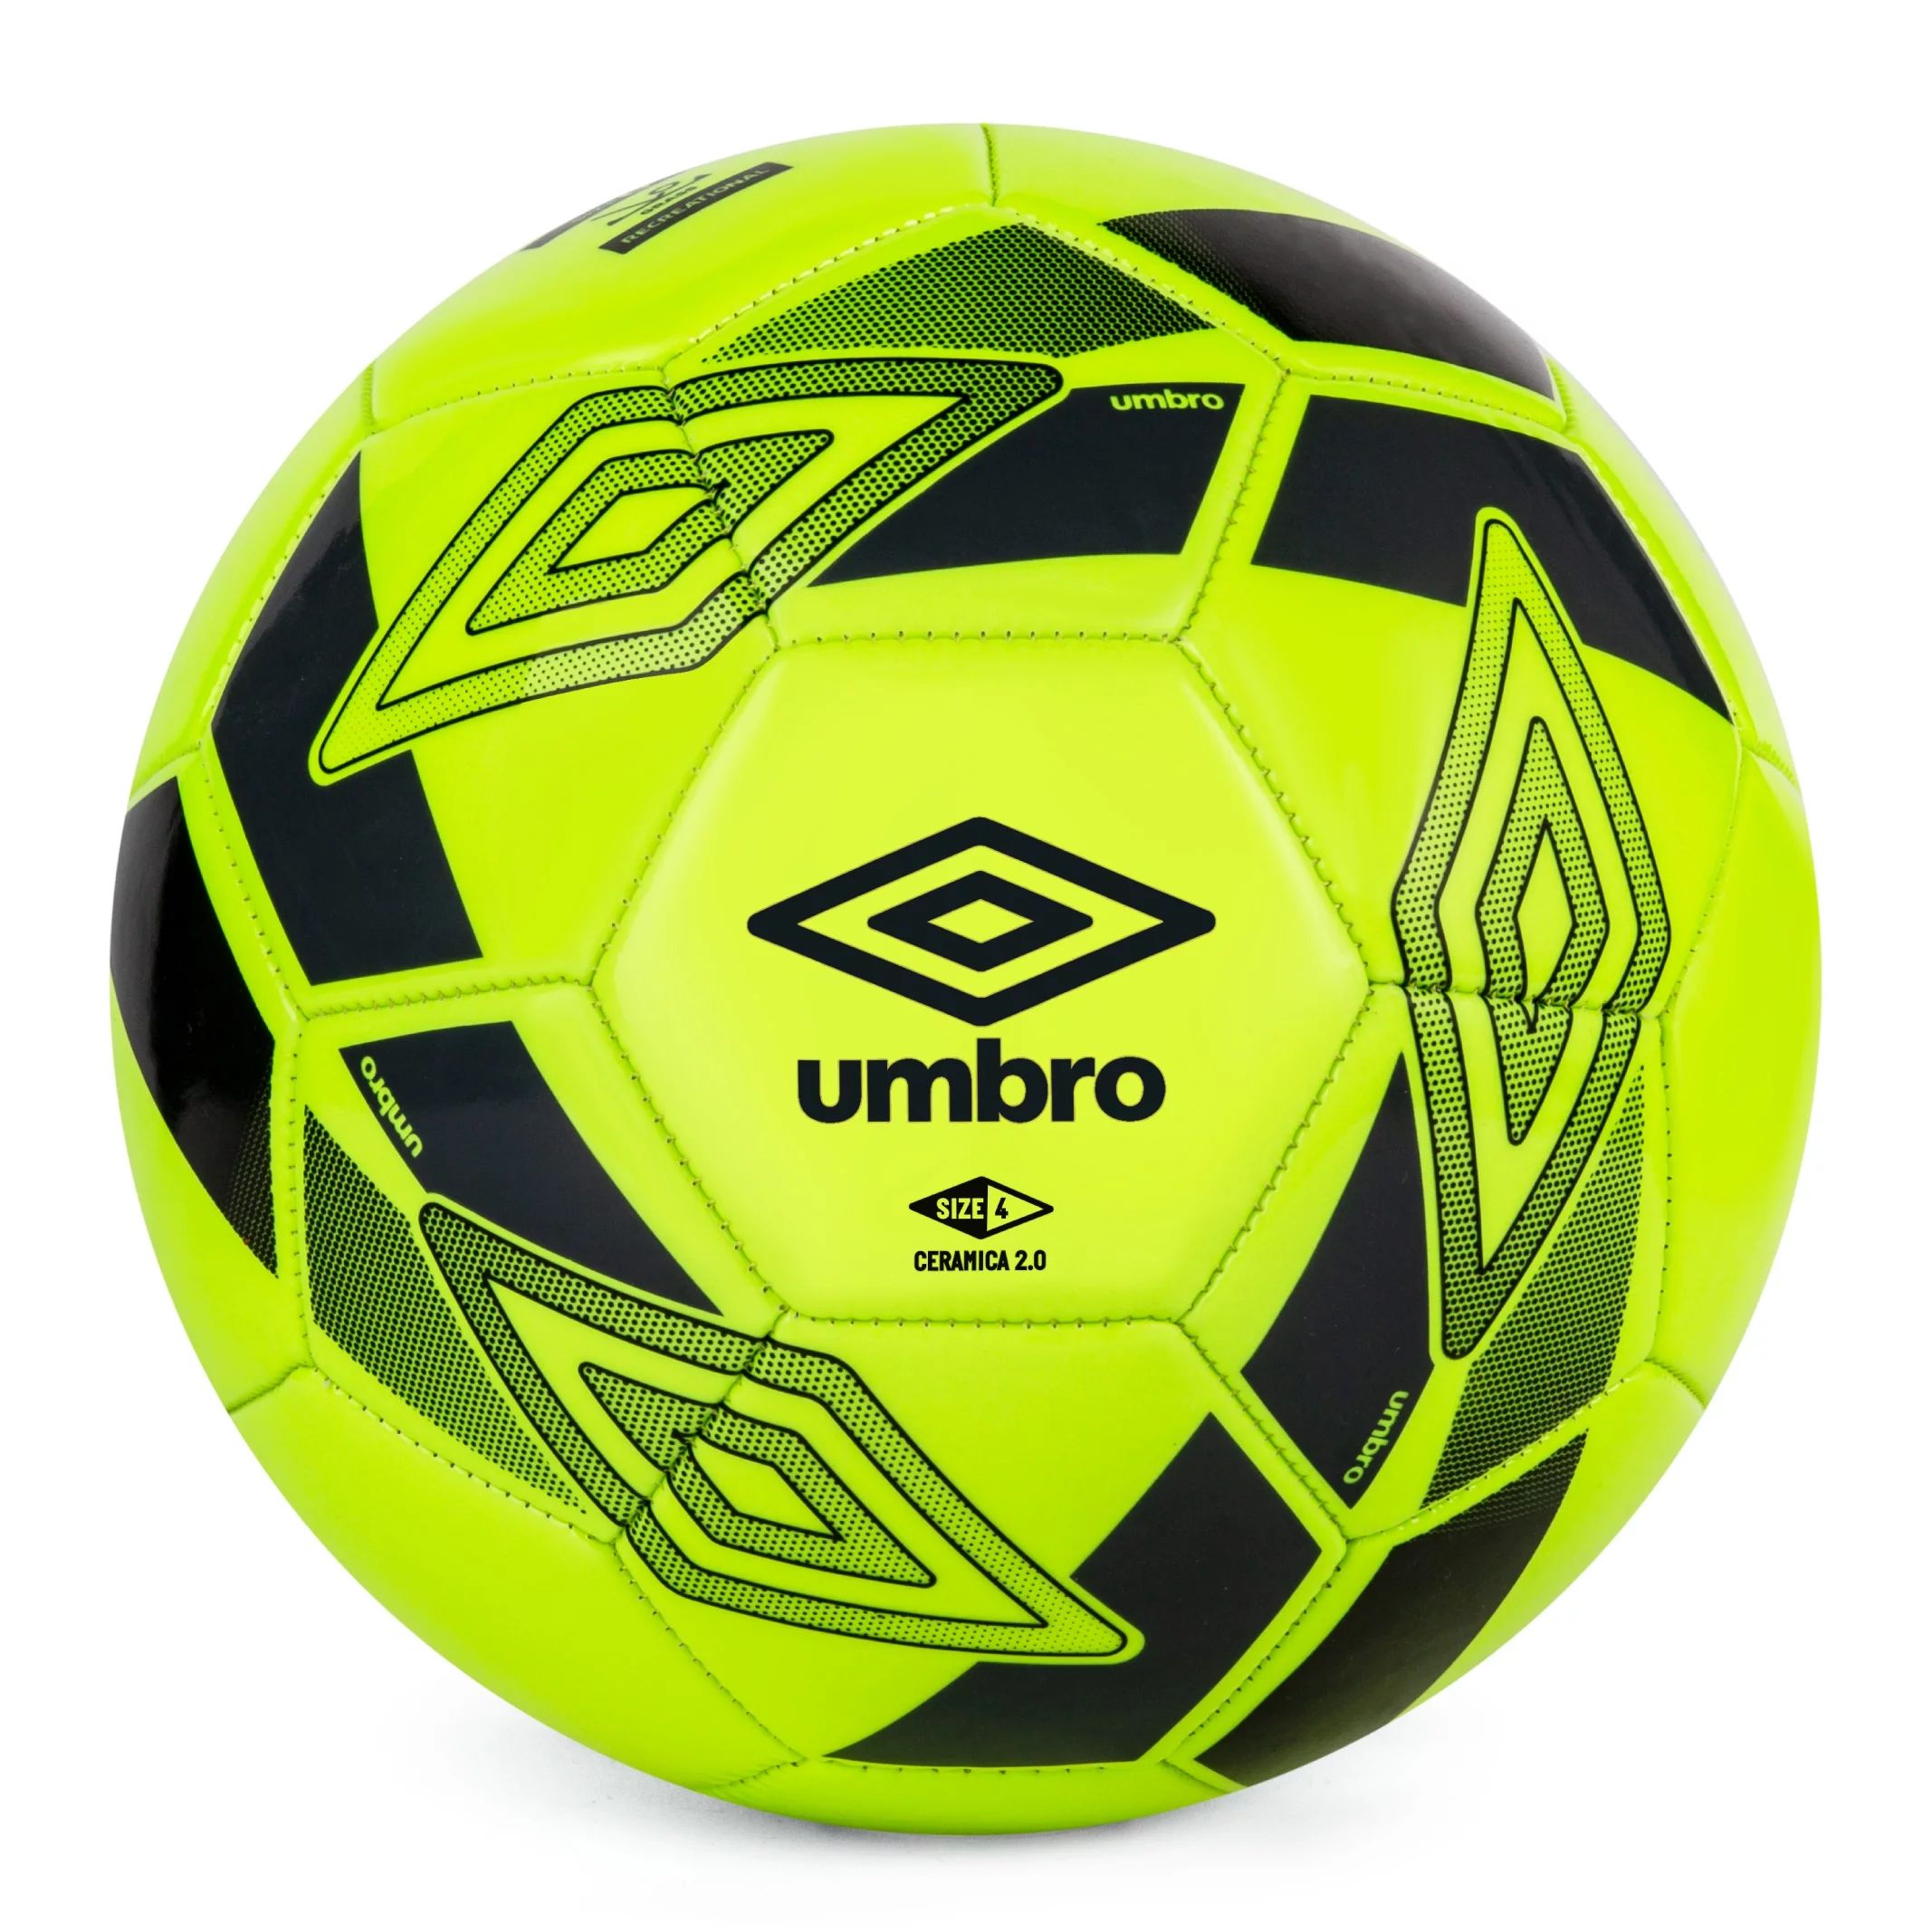 UMBRO Size 4 Yellow Soccer Ball | Walmart (US)